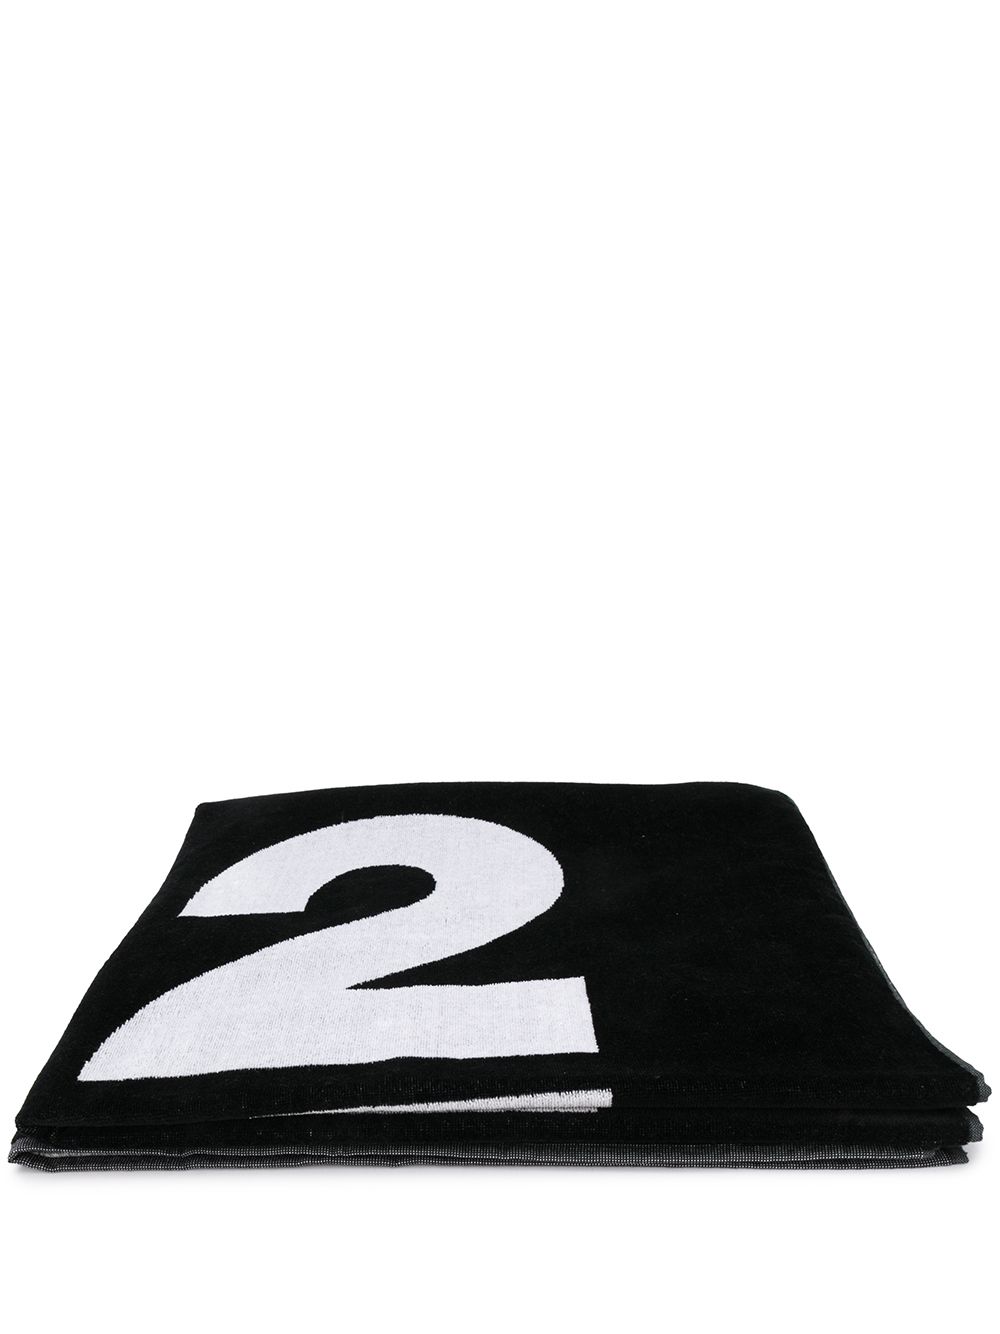 Dsquared2 Logo Towel In Black